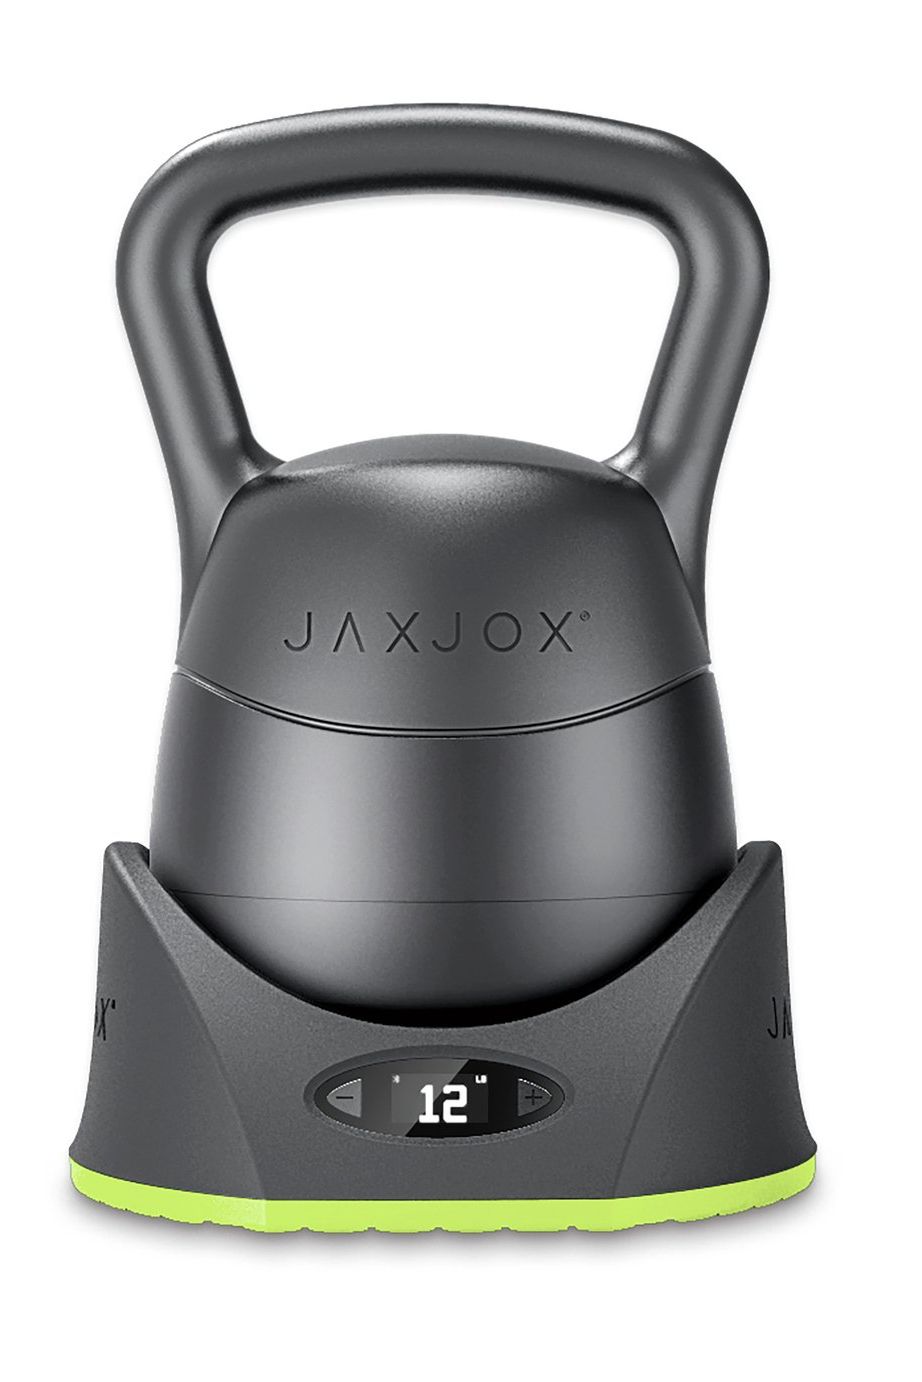 JAXJOX Adjustable Kettlebell